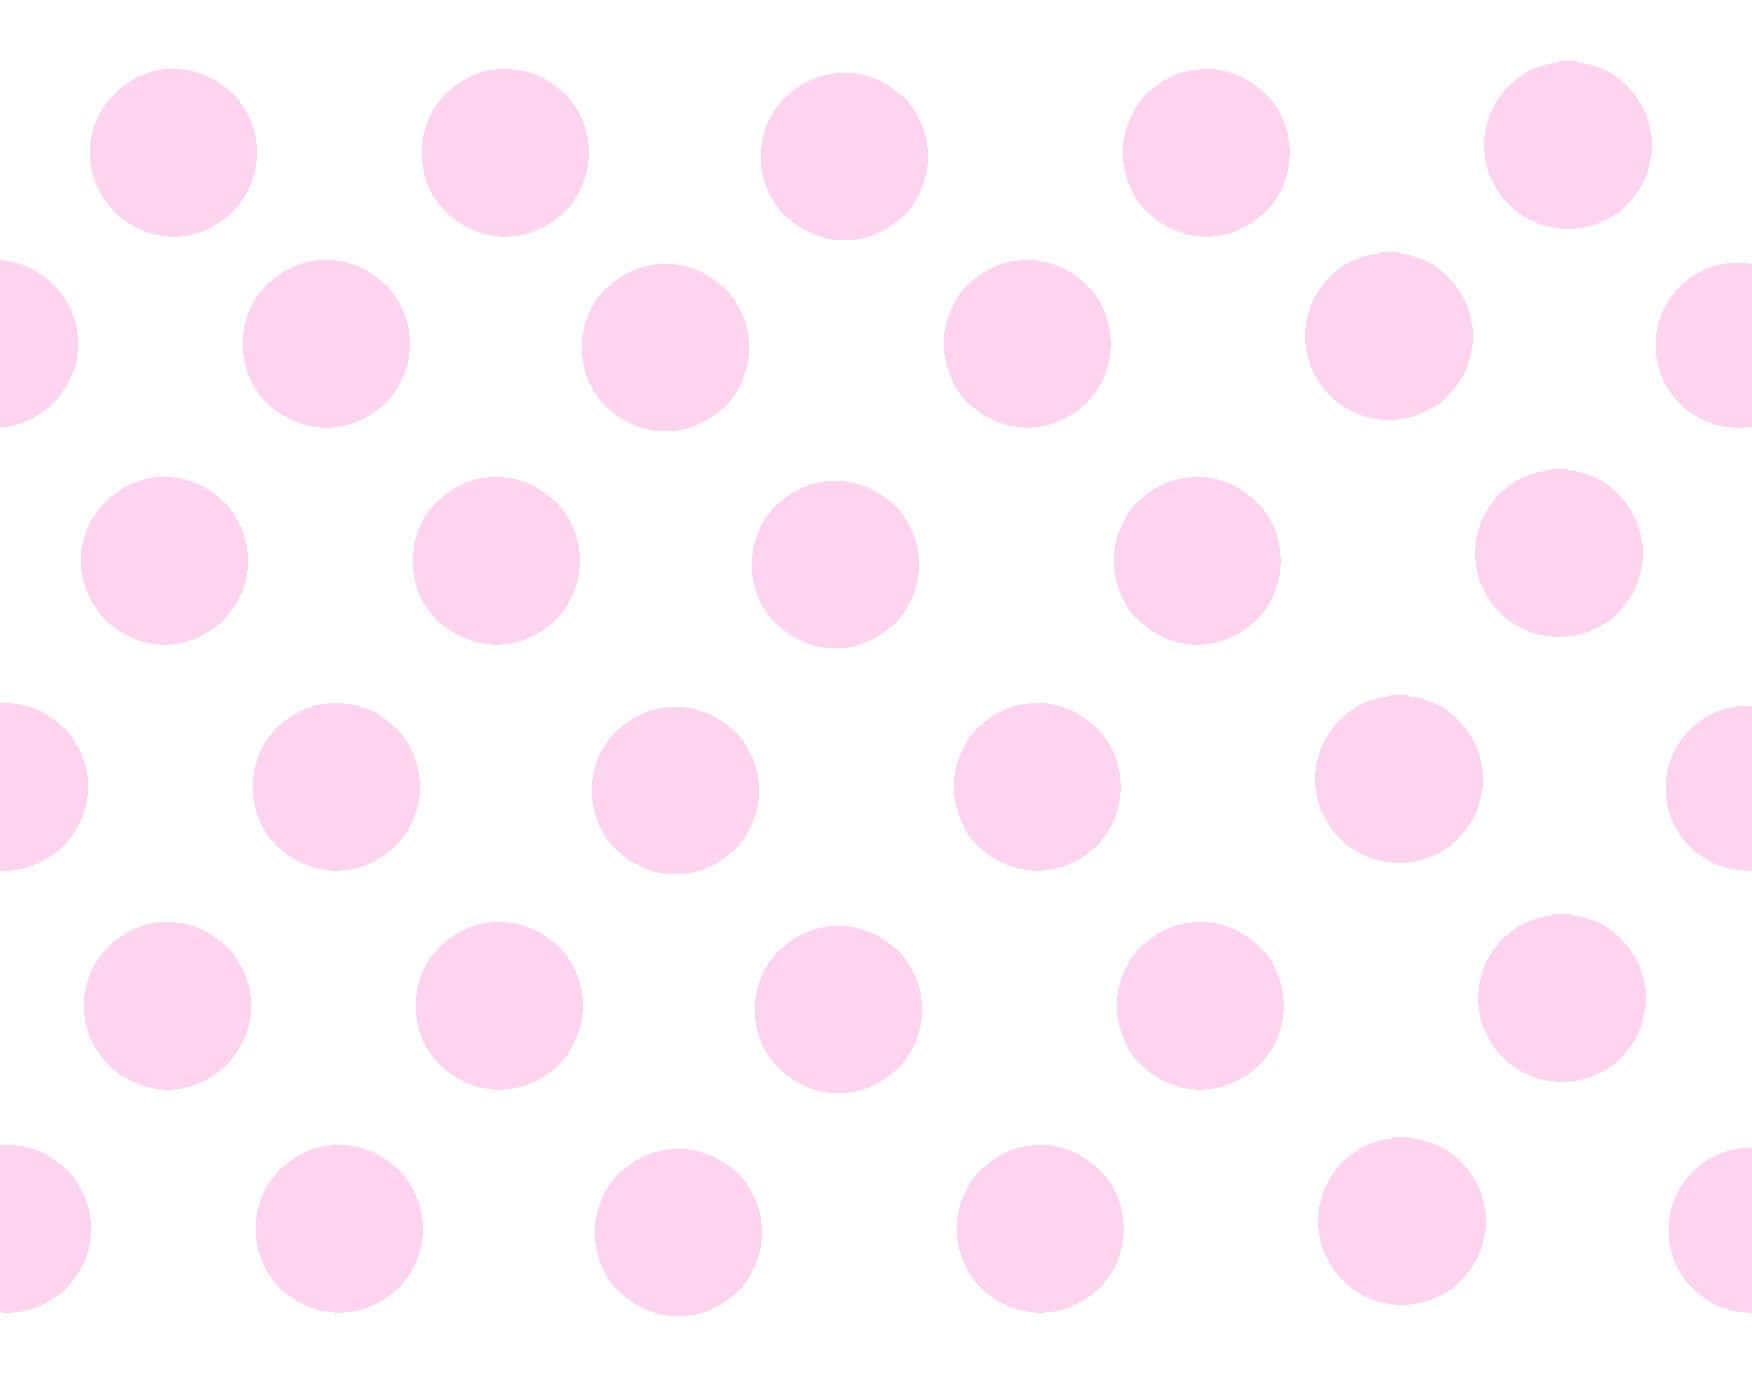 Stylish Pink and White Polka Dot Pattern Wallpaper